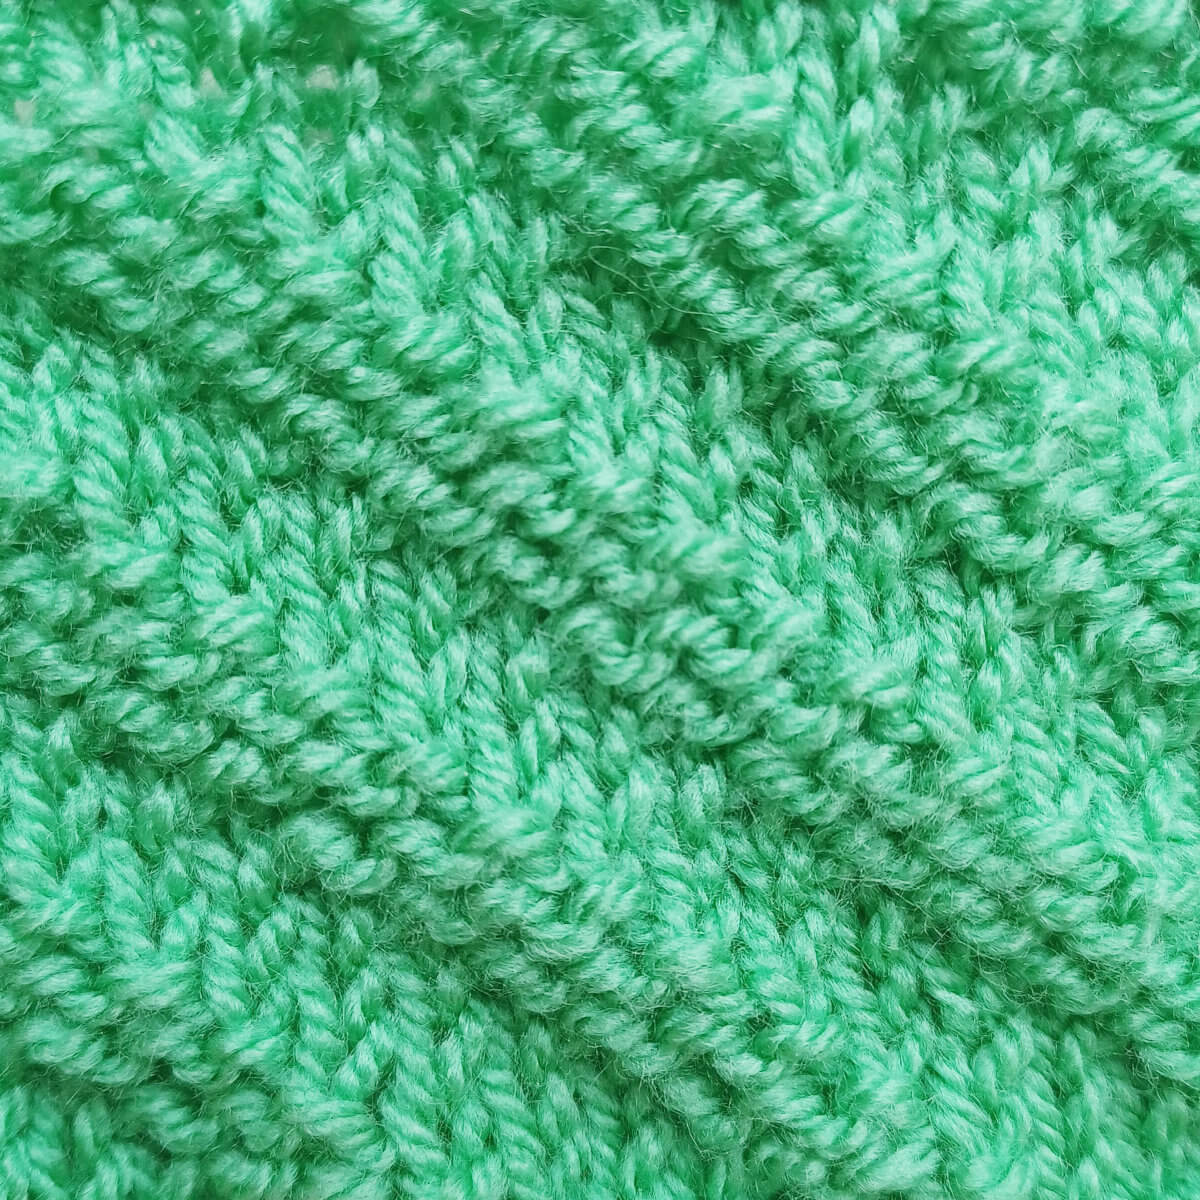 stitch pattern - double lace rib - La Visch Designs